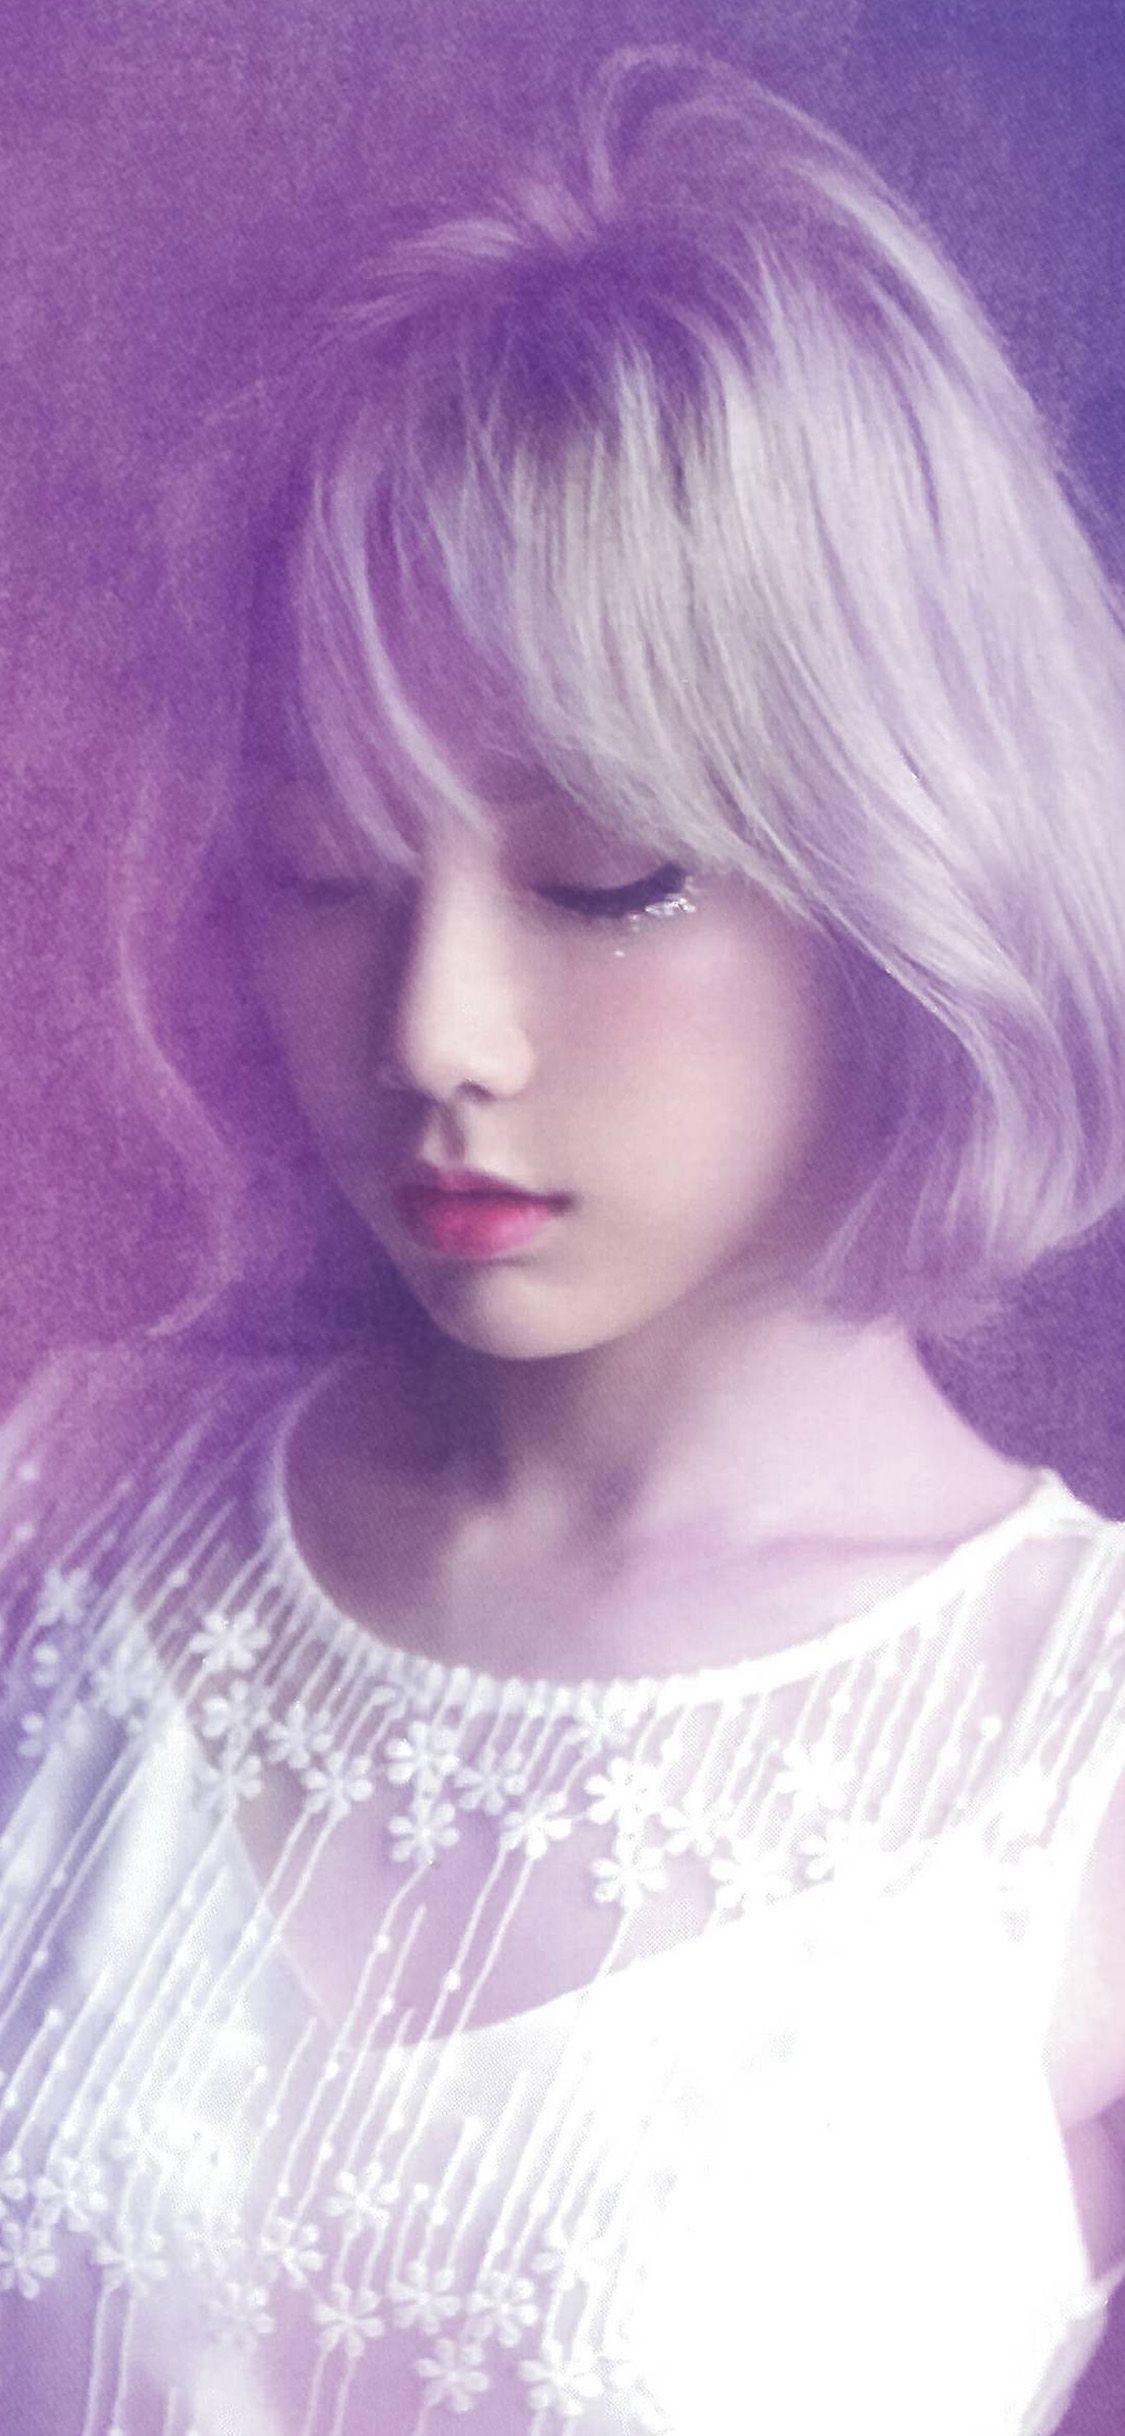 iPhoneX wallpaper: taeyeon kpop girl asian purple. Taeyeon